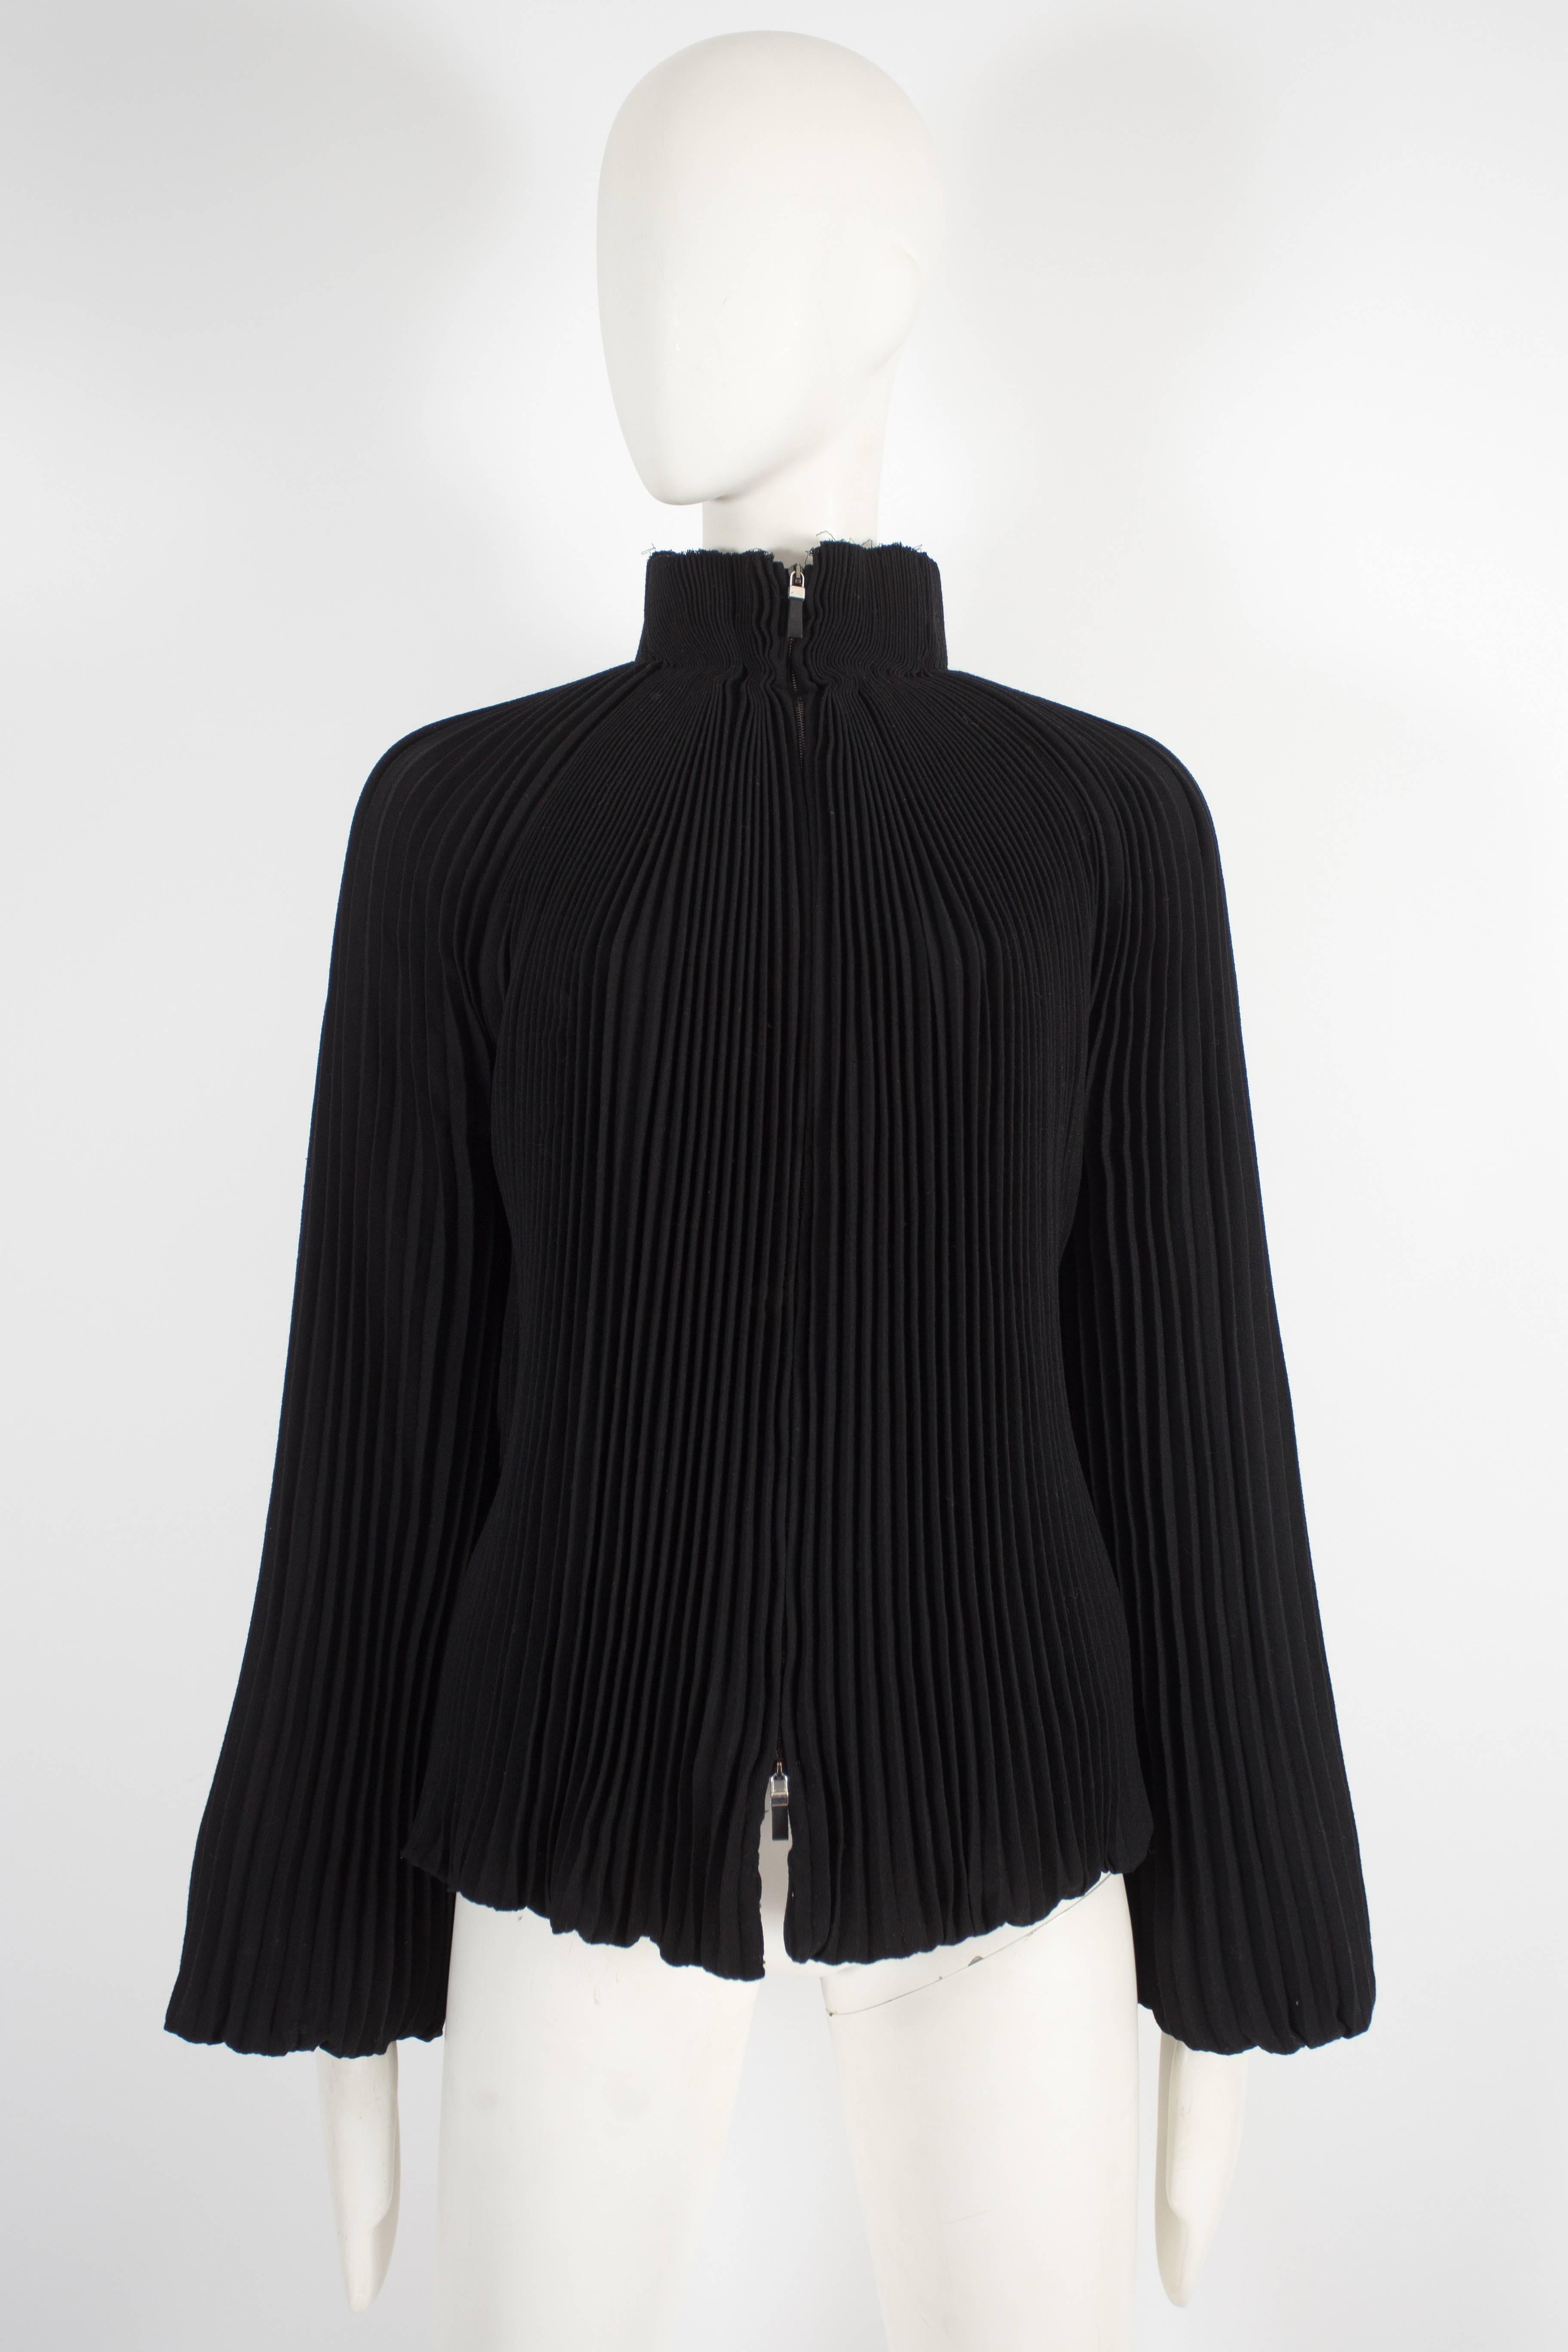 Voici une exquise veste de soirée Alexander McQueen de la collection pré automne 2004. Cette veste est un véritable chef-d'œuvre, mettant en valeur le savoir-faire et le design caractéristiques de la marque.

Conçue en crêpe de laine noir plissé en